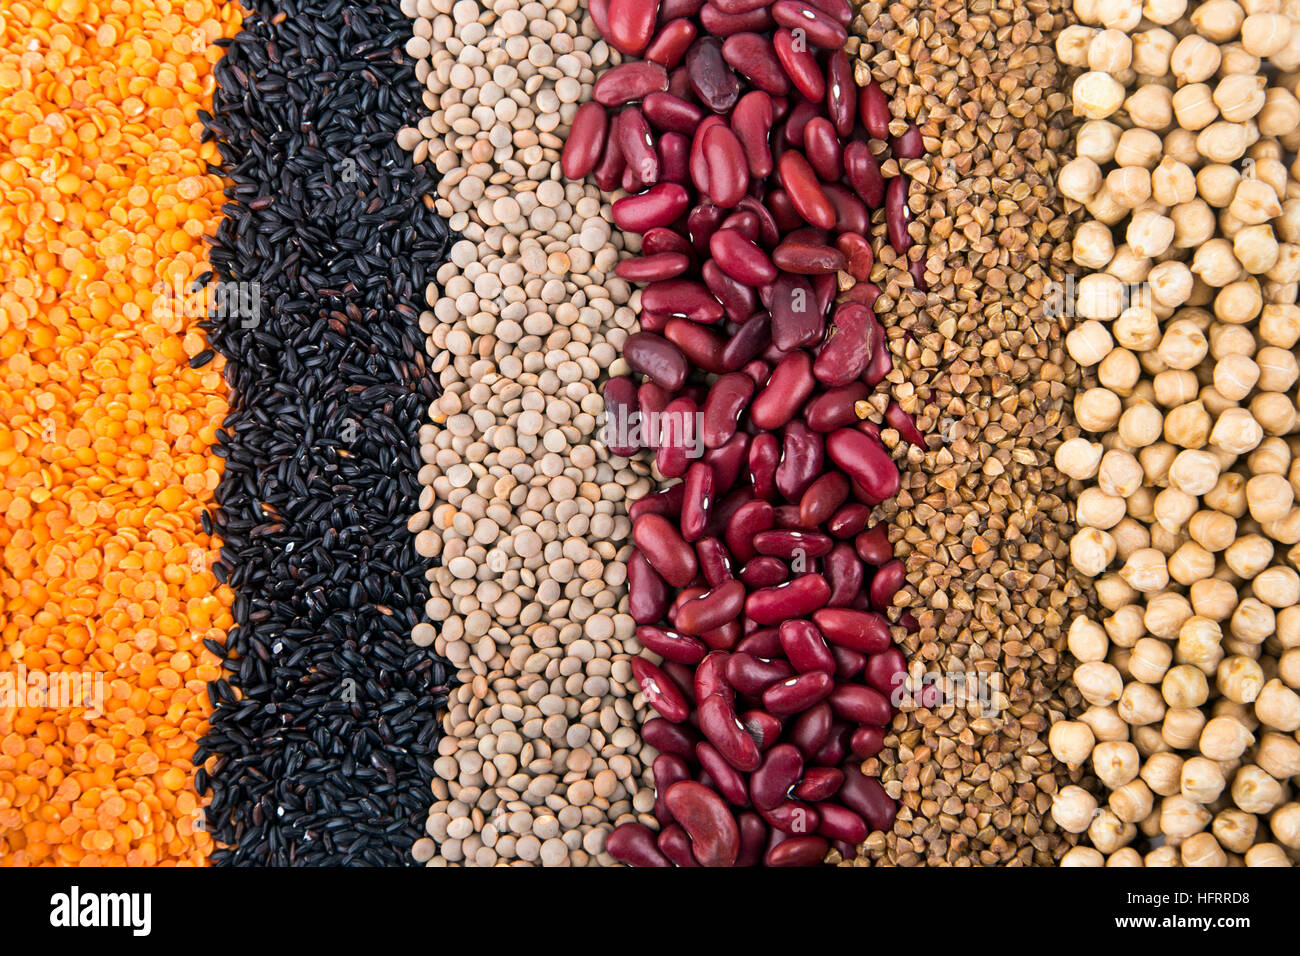 Trockene Bohnen, Getreide und Hülsenfrüchte - Speisekammer Essen Hintergrund Stockfoto